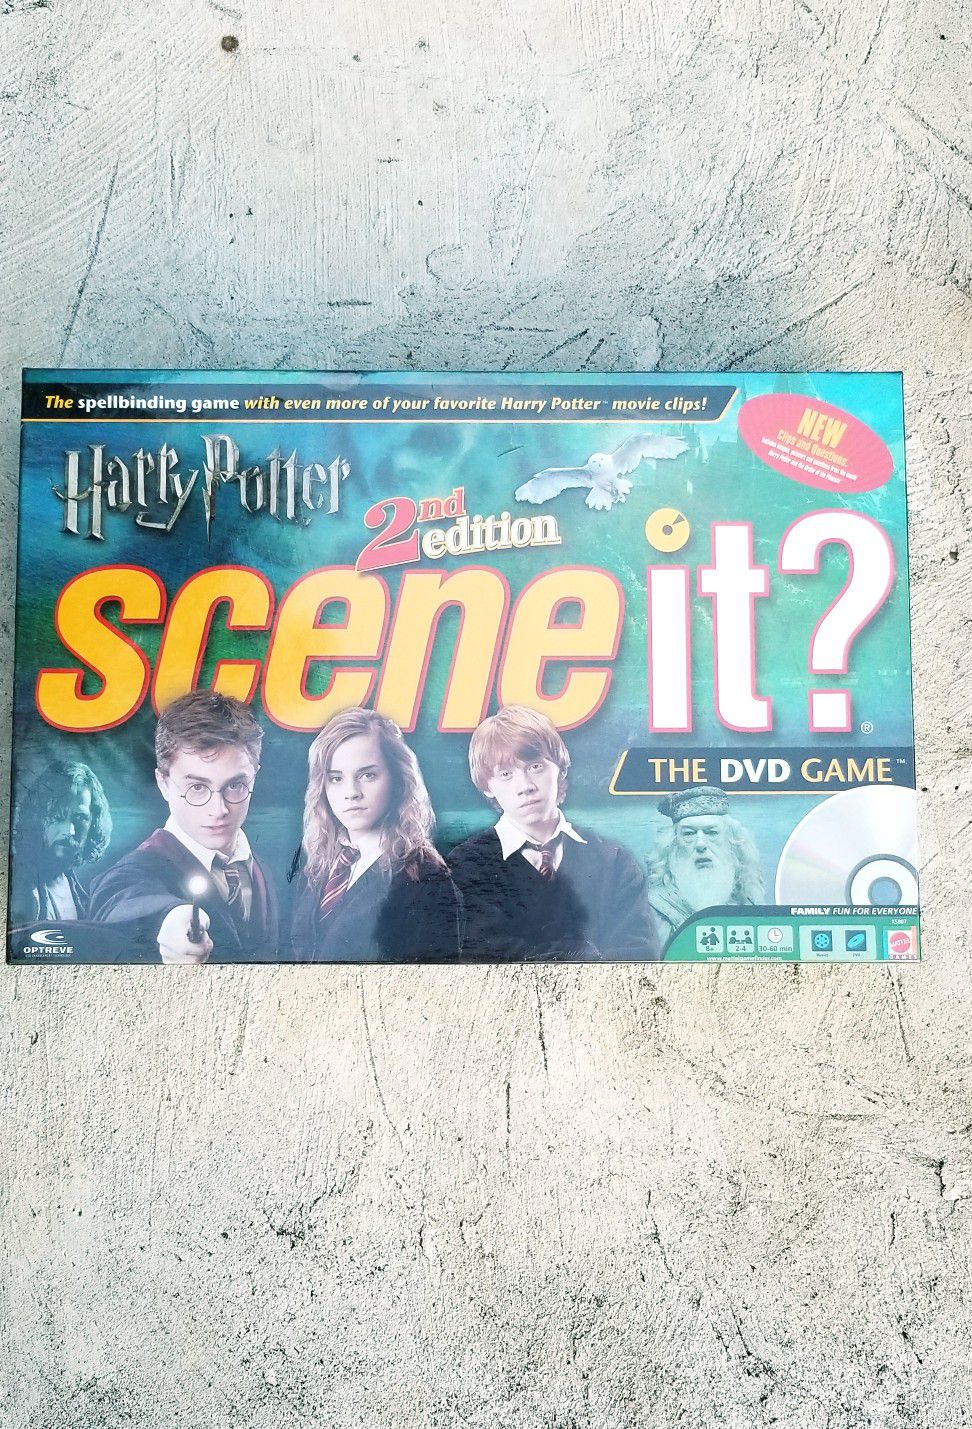 Harry Potter scene it board game